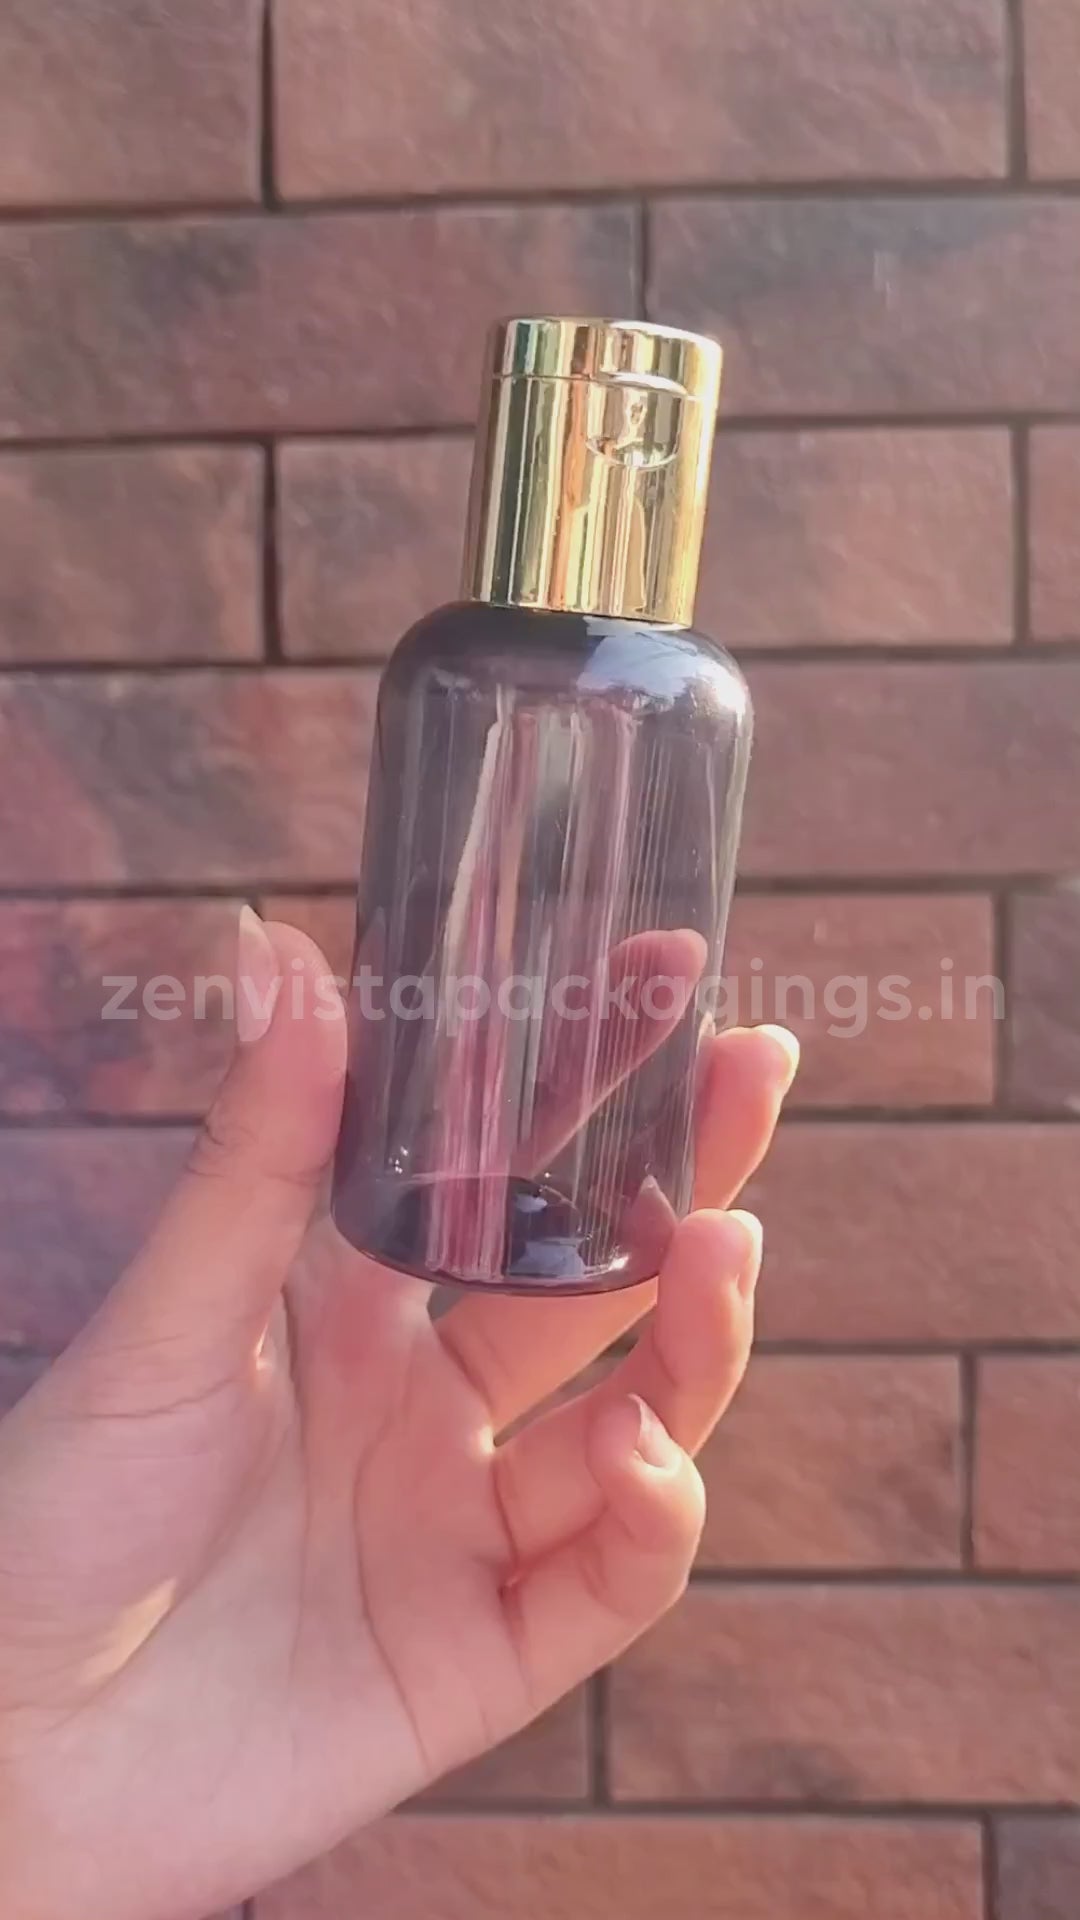 Transparent Black Color Pet Bottle With Gold Plated Fliptop Cap 100ml [ZMT100]